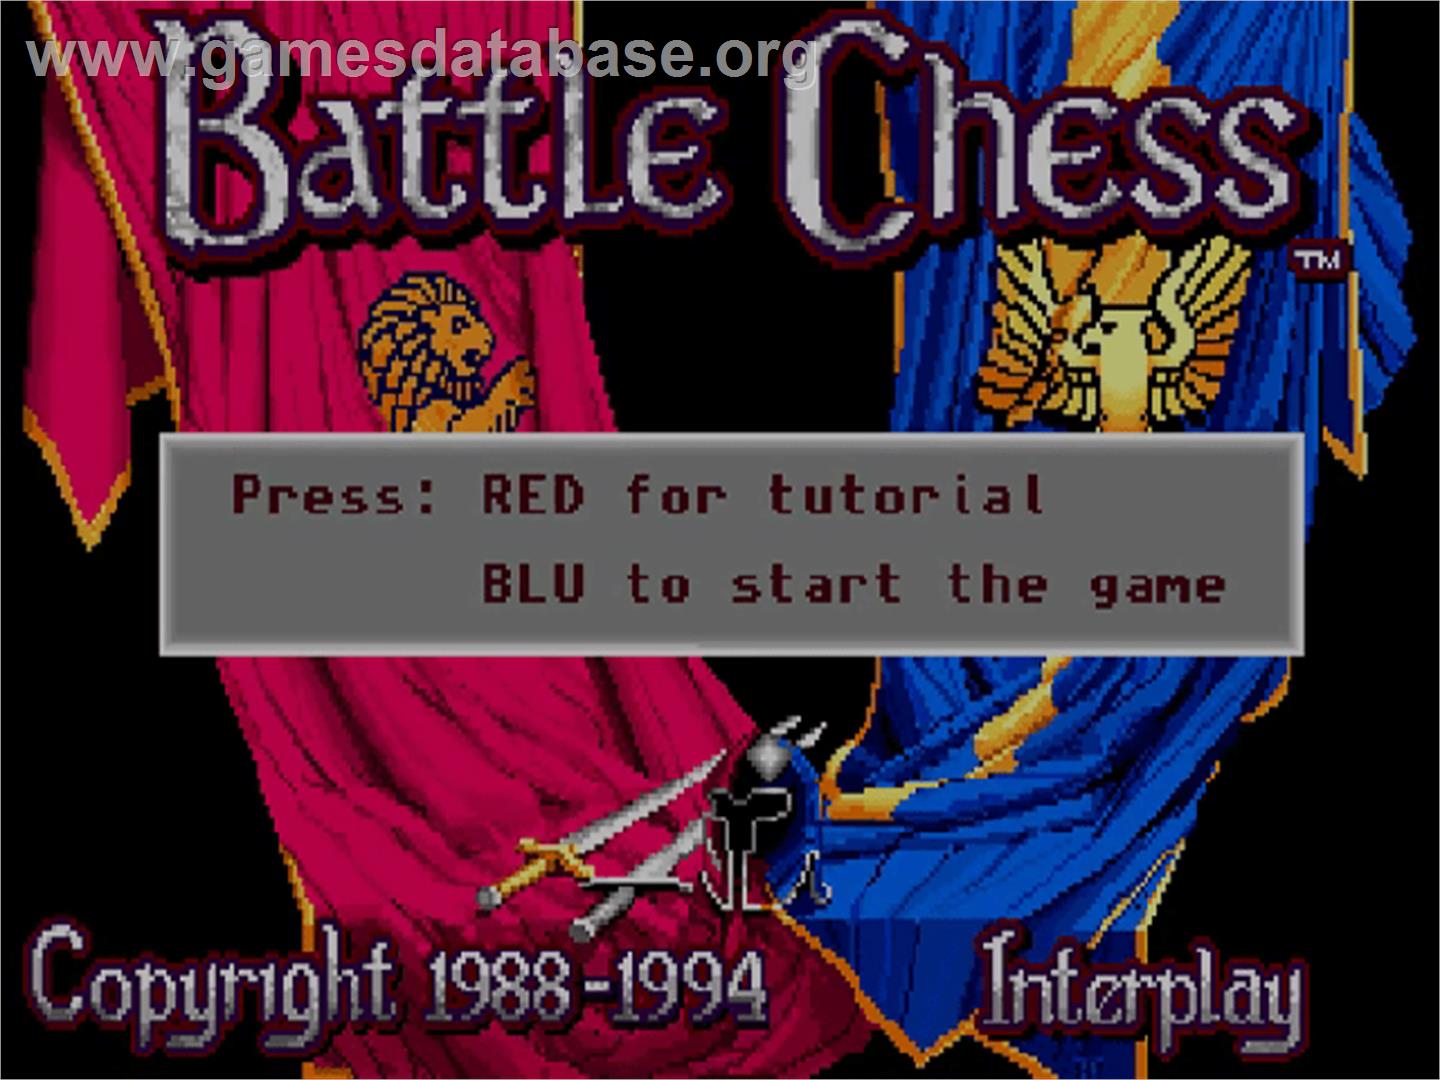 Battle Chess - Commodore Amiga CD32 - Artwork - Title Screen